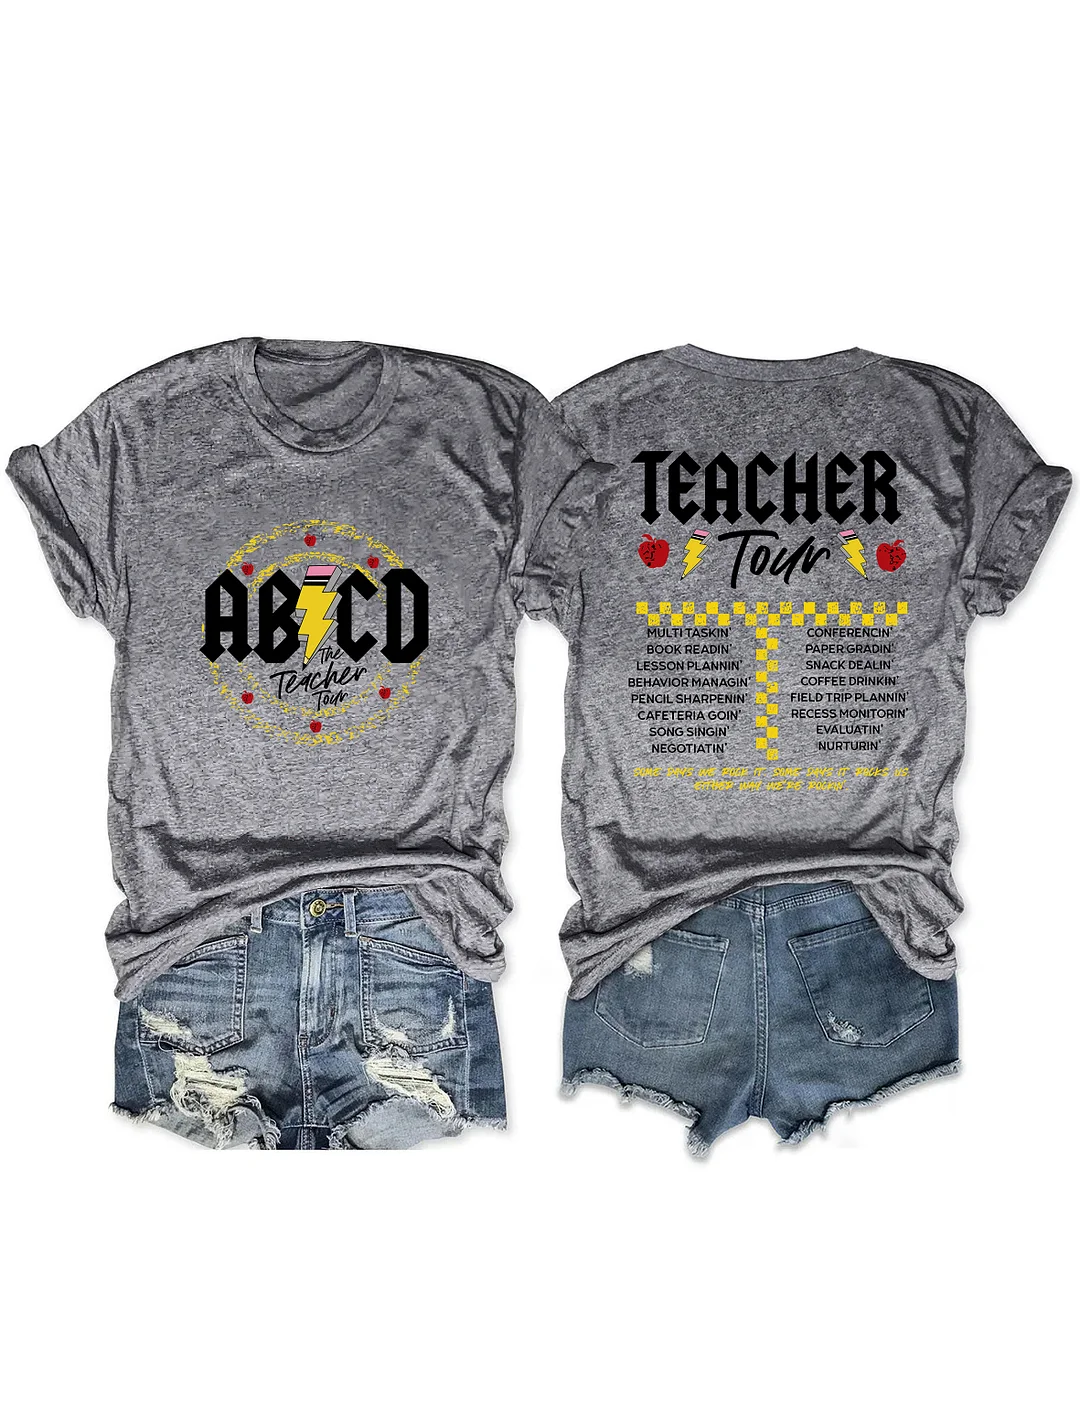 ABCD Teacher Tour T-shirt